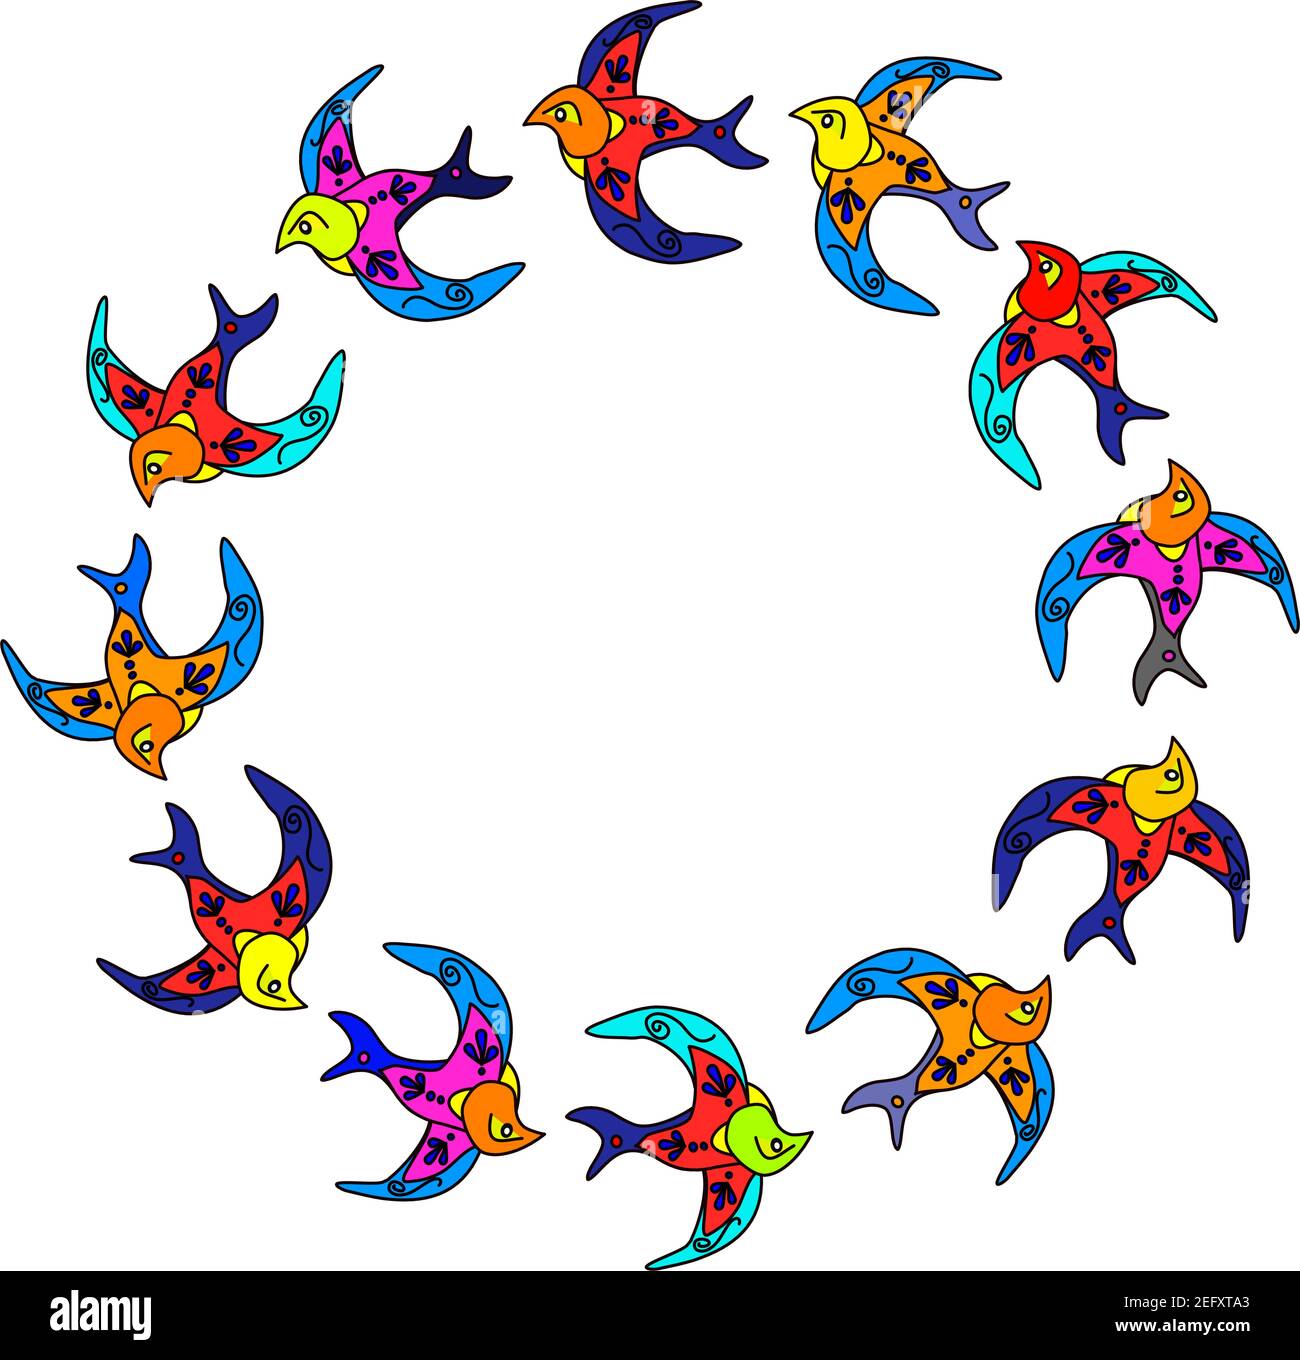 Gráfico vectorial de doce golondrinas volando en un círculo sobre fondo transparente. Basado en las "Andorinhas" que vimos en Lisboa, Portugal Ilustración del Vector